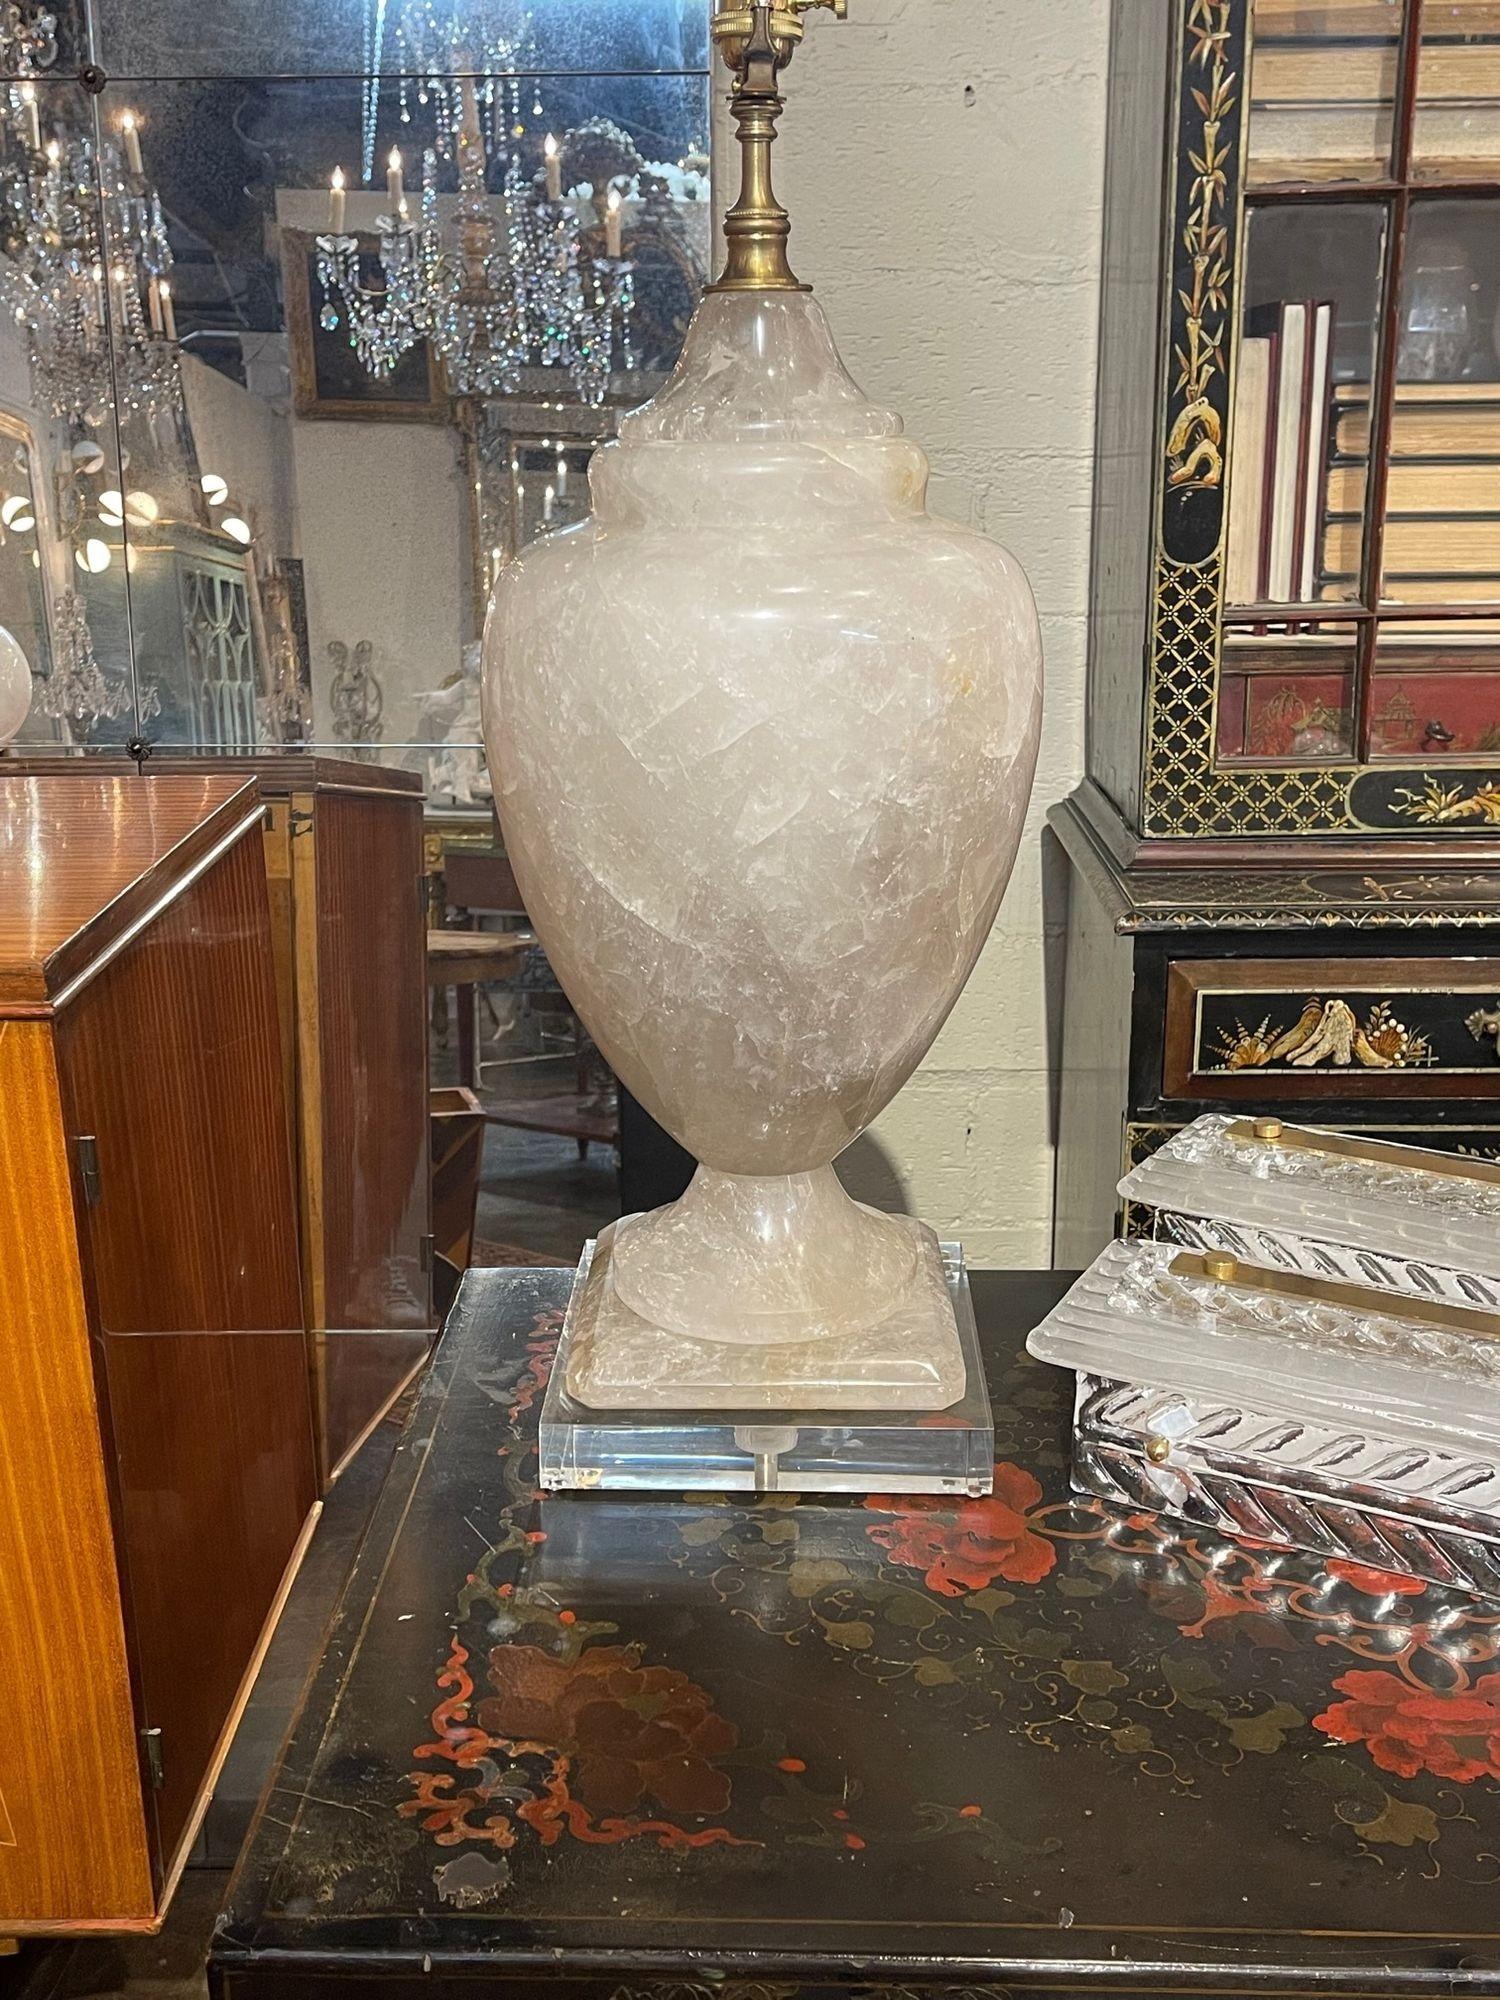 Très belle lampe en cristal de roche poli à grande échelle provenant du Brésil. Belle forme d'urne sur une base en lucite. Crée une touche très élégante ! Très impressionnant !